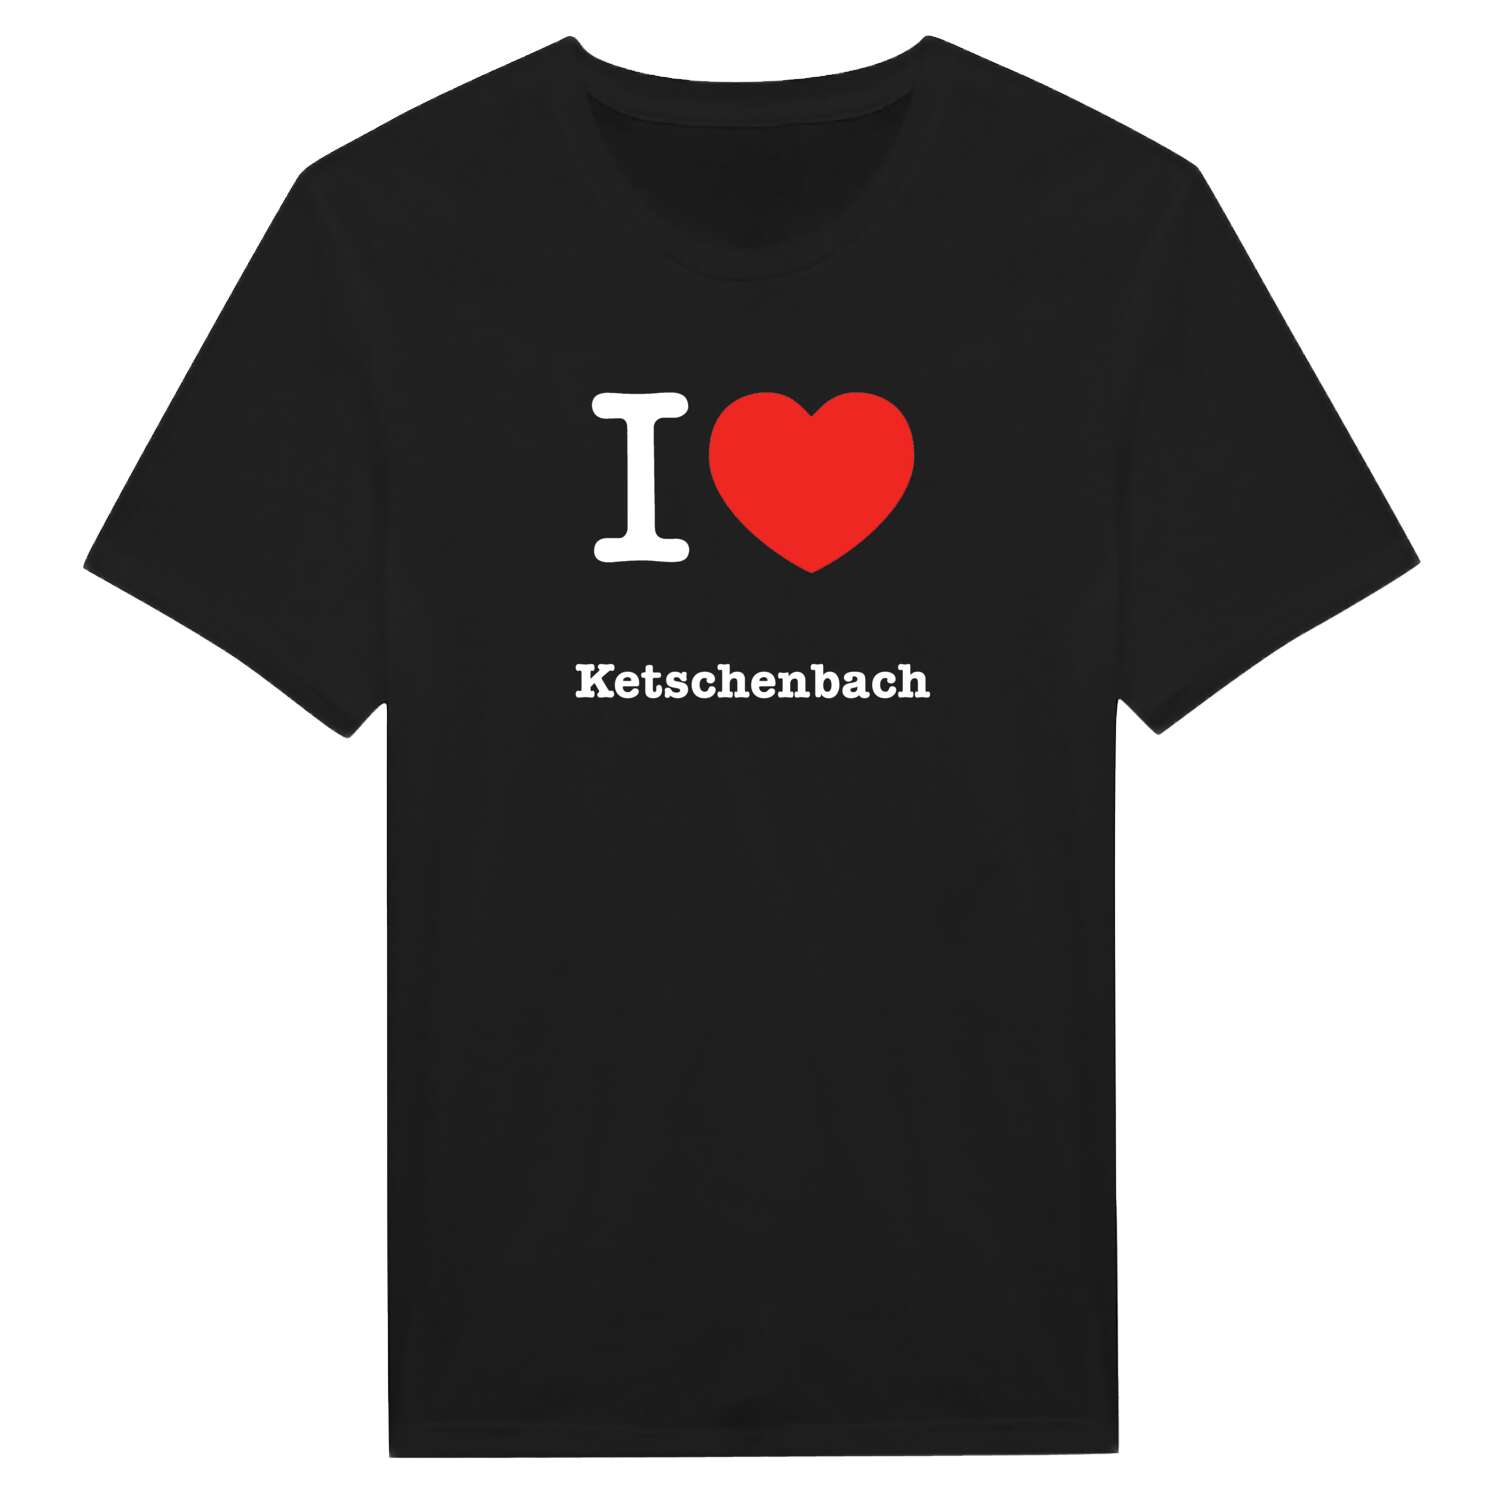 Ketschenbach T-Shirt »I love«